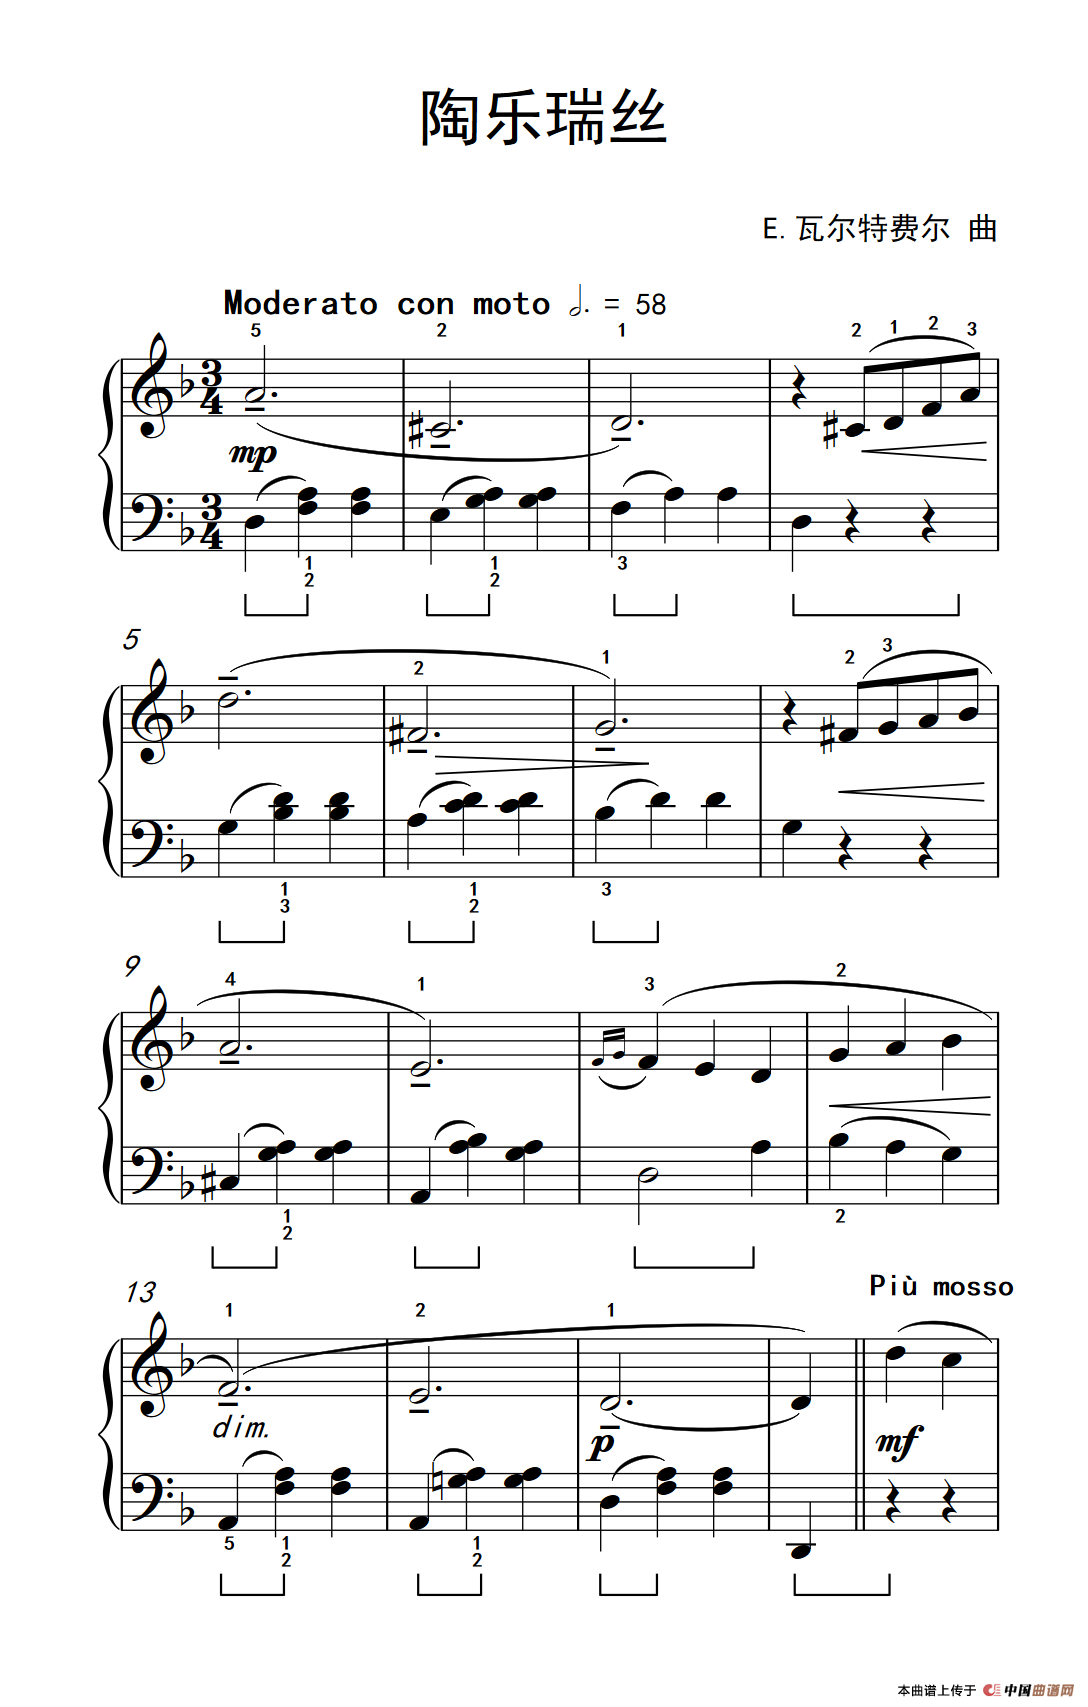 《陶乐瑞丝》钢琴曲谱图分享